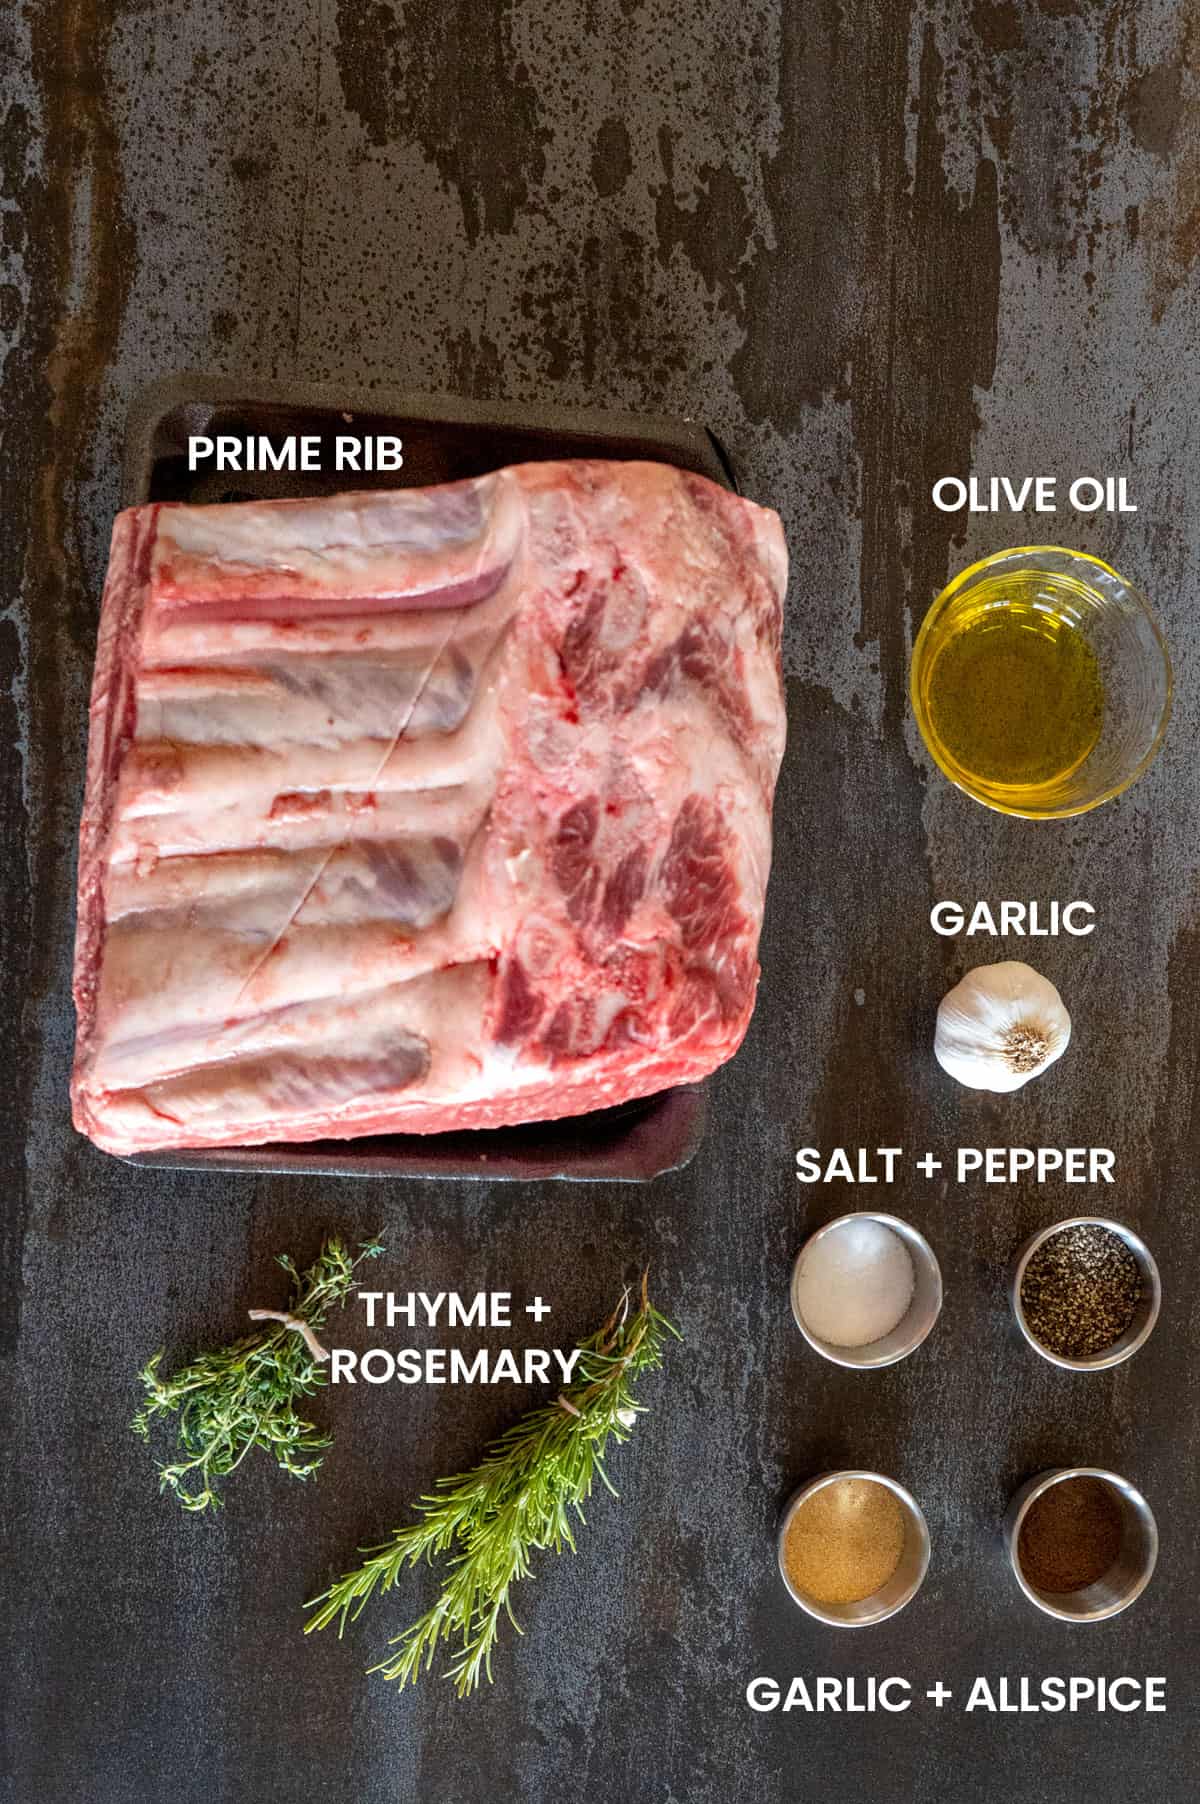 prime rib ingredients: prime rib, olive oil, garlic, salt, pepper, garlic, allspice, thyme, rosemary.